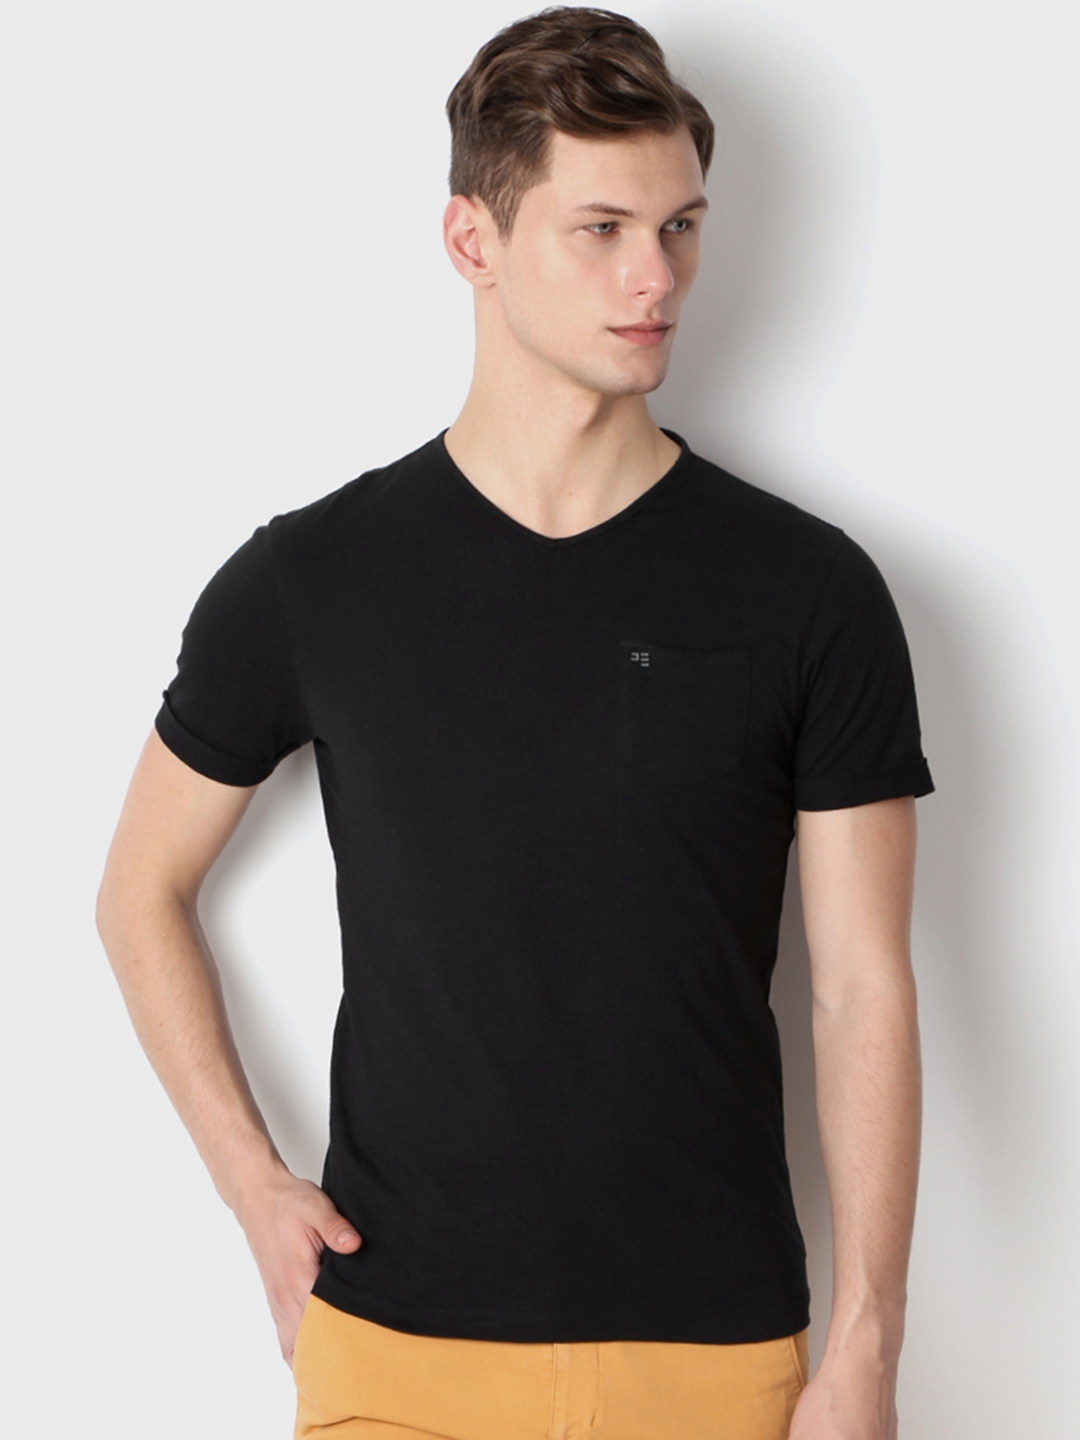 Buy Peter England Men Black Solid V Neck T Shirt - Tshirts for Men ...